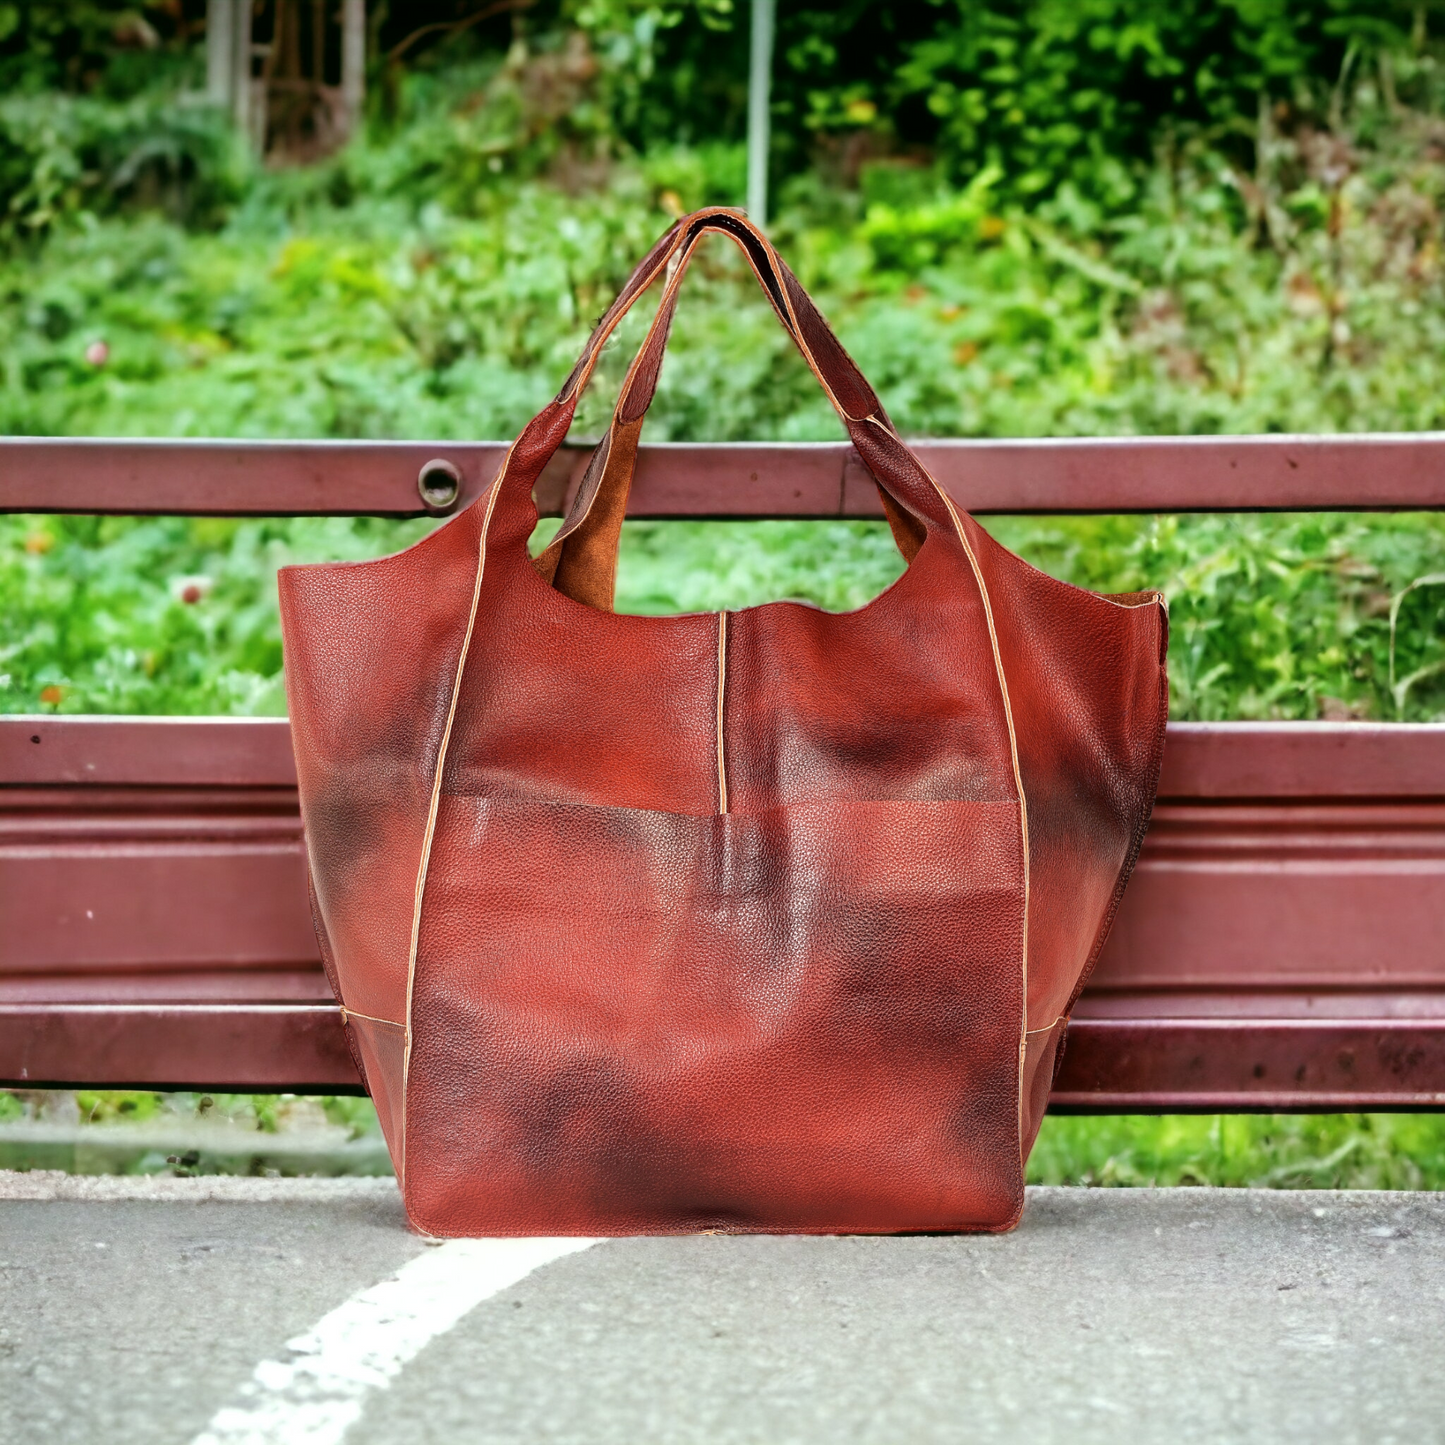 Cognac Brown Oversize Tote Shopper Bag Large Leather Tote Bag Big Shoulder Bag Large Travel Bag Shopping Bag Oversized Tote Everyday Purse